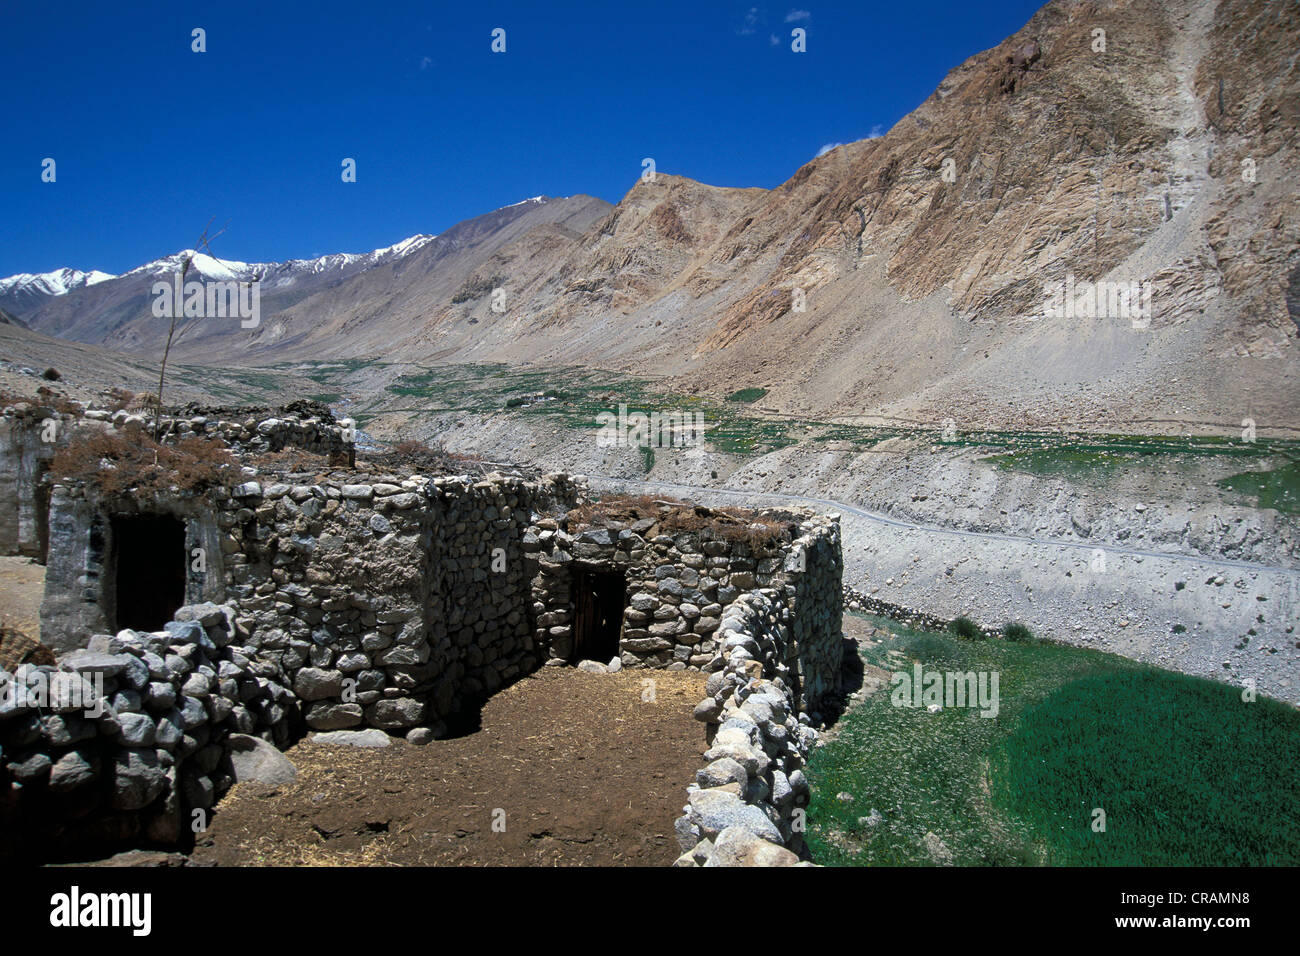 Ferme et champs, la Vallée de Nubra, Ladakh, Himalaya indien, le Jammu-et-Cachemire, l'Inde du nord, Inde, Asie Banque D'Images